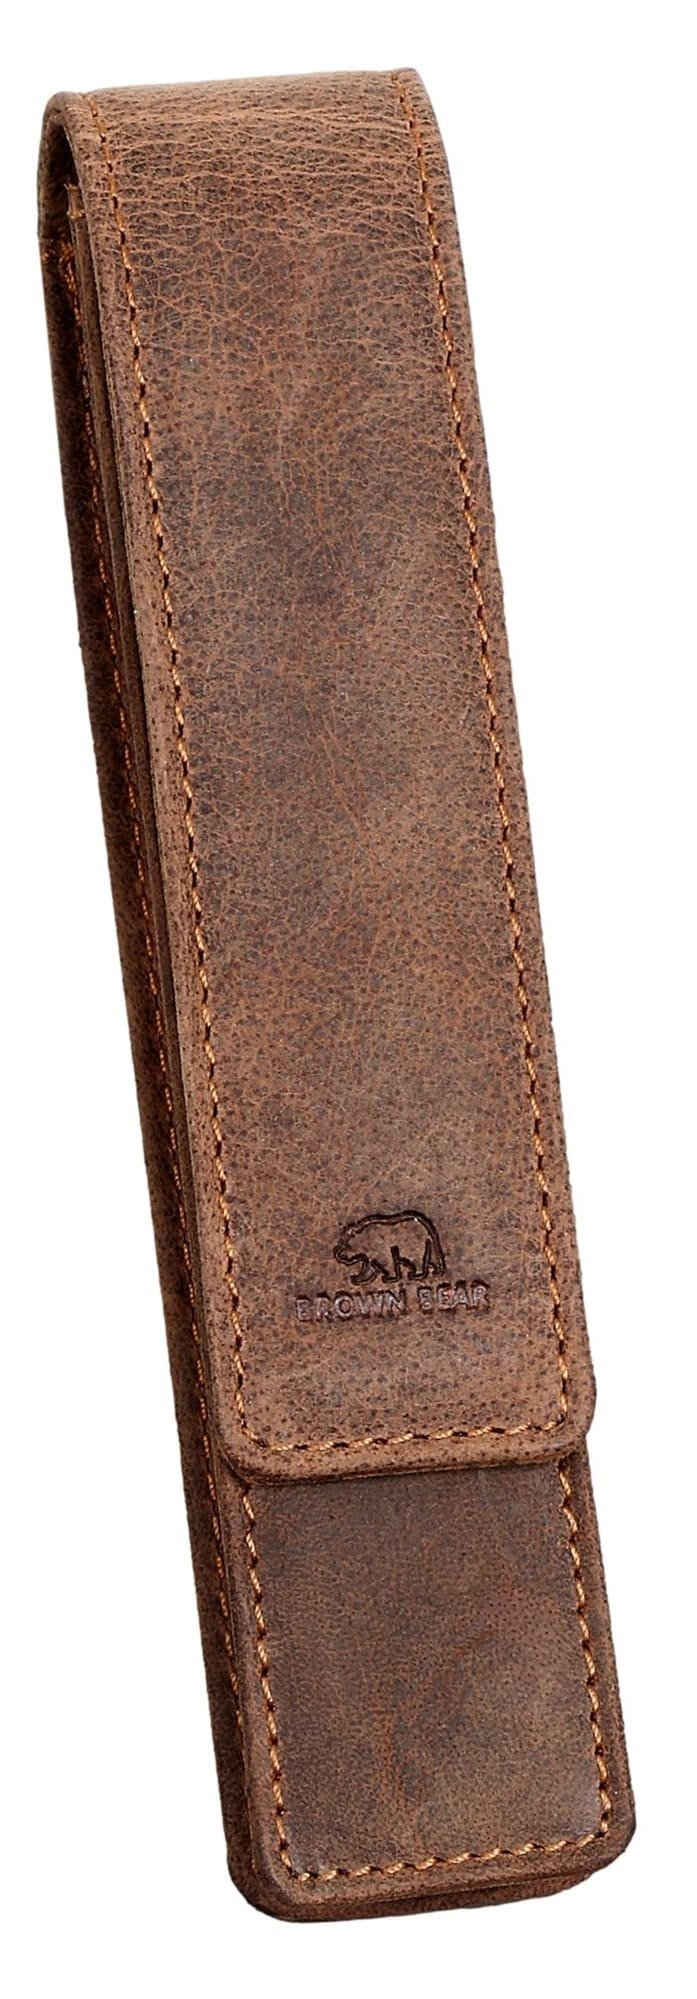 Brown Bear Schreibgeräteetui Golf 01 - Fülleretui aus Echtleder für einen Stift, mit Magnetverschluss für Damen und Herren Braun Vintage